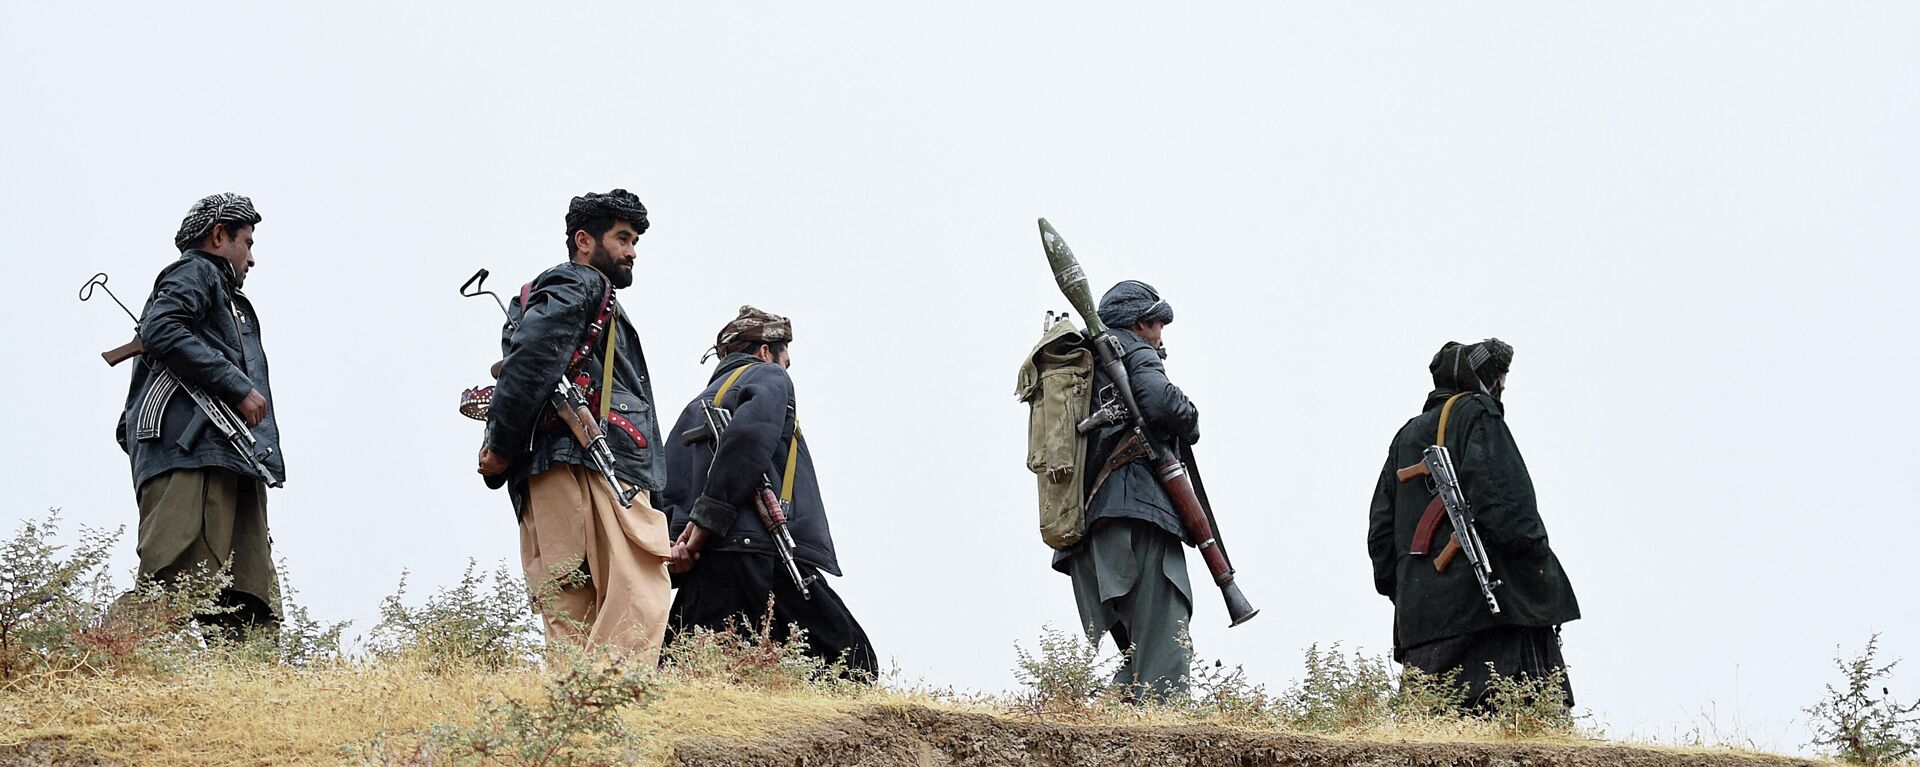 Вооруженные люди в Афганистане - Sputnik Ўзбекистон, 1920, 08.09.2021